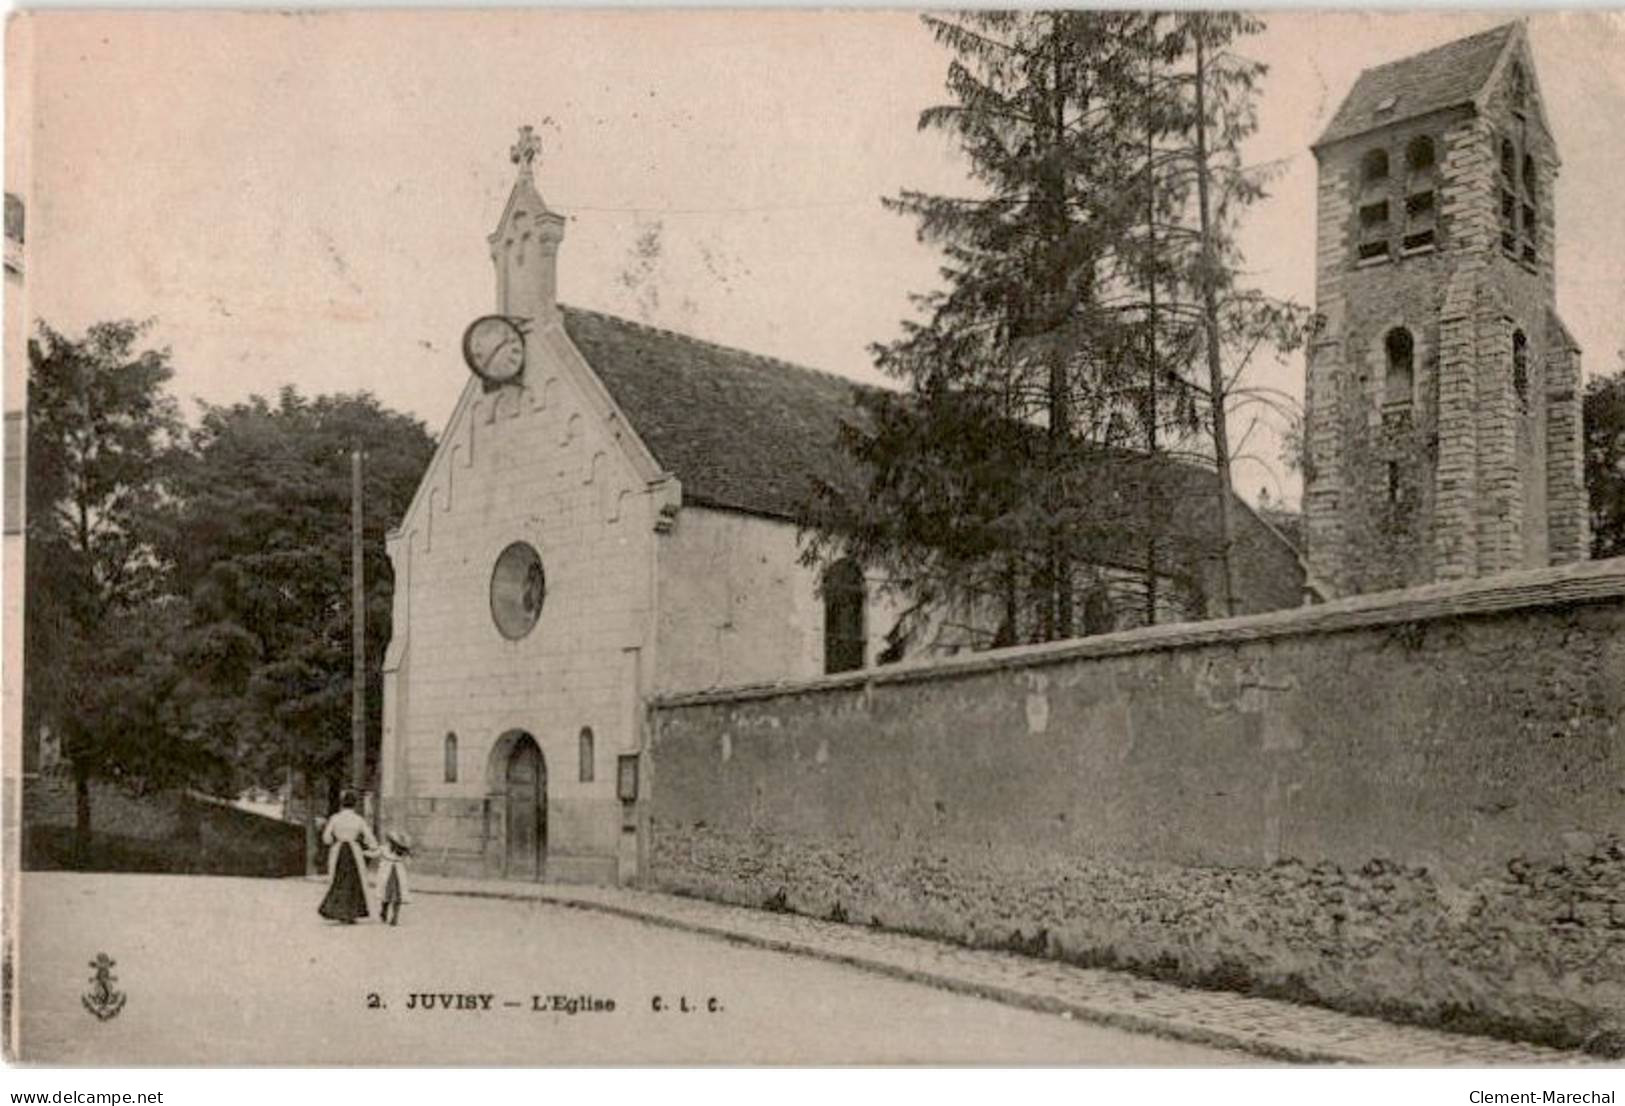 JUVISY-sur-ORGE: L'église - état - Juvisy-sur-Orge